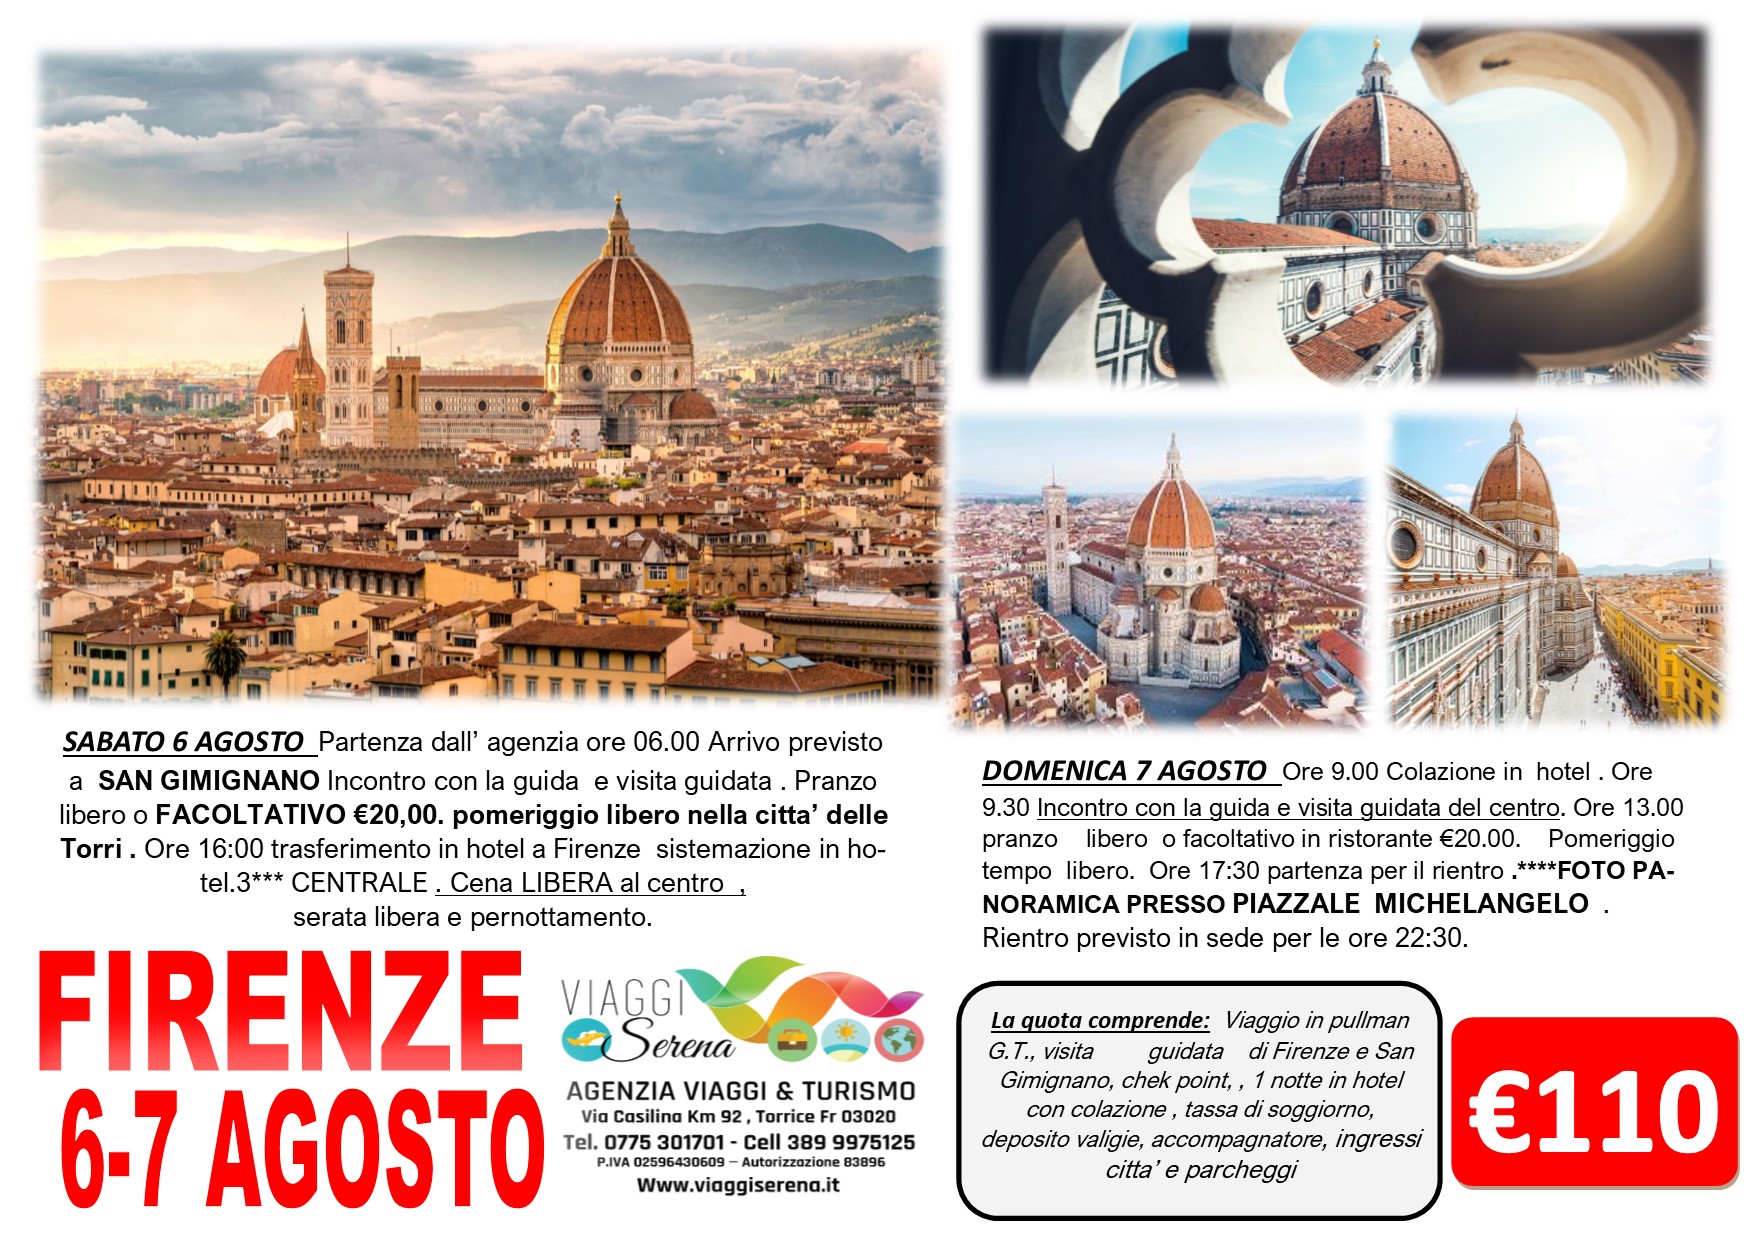 Viaggi di Gruppo: Firenze & San Gimignano 6-7 Agosto €110,00